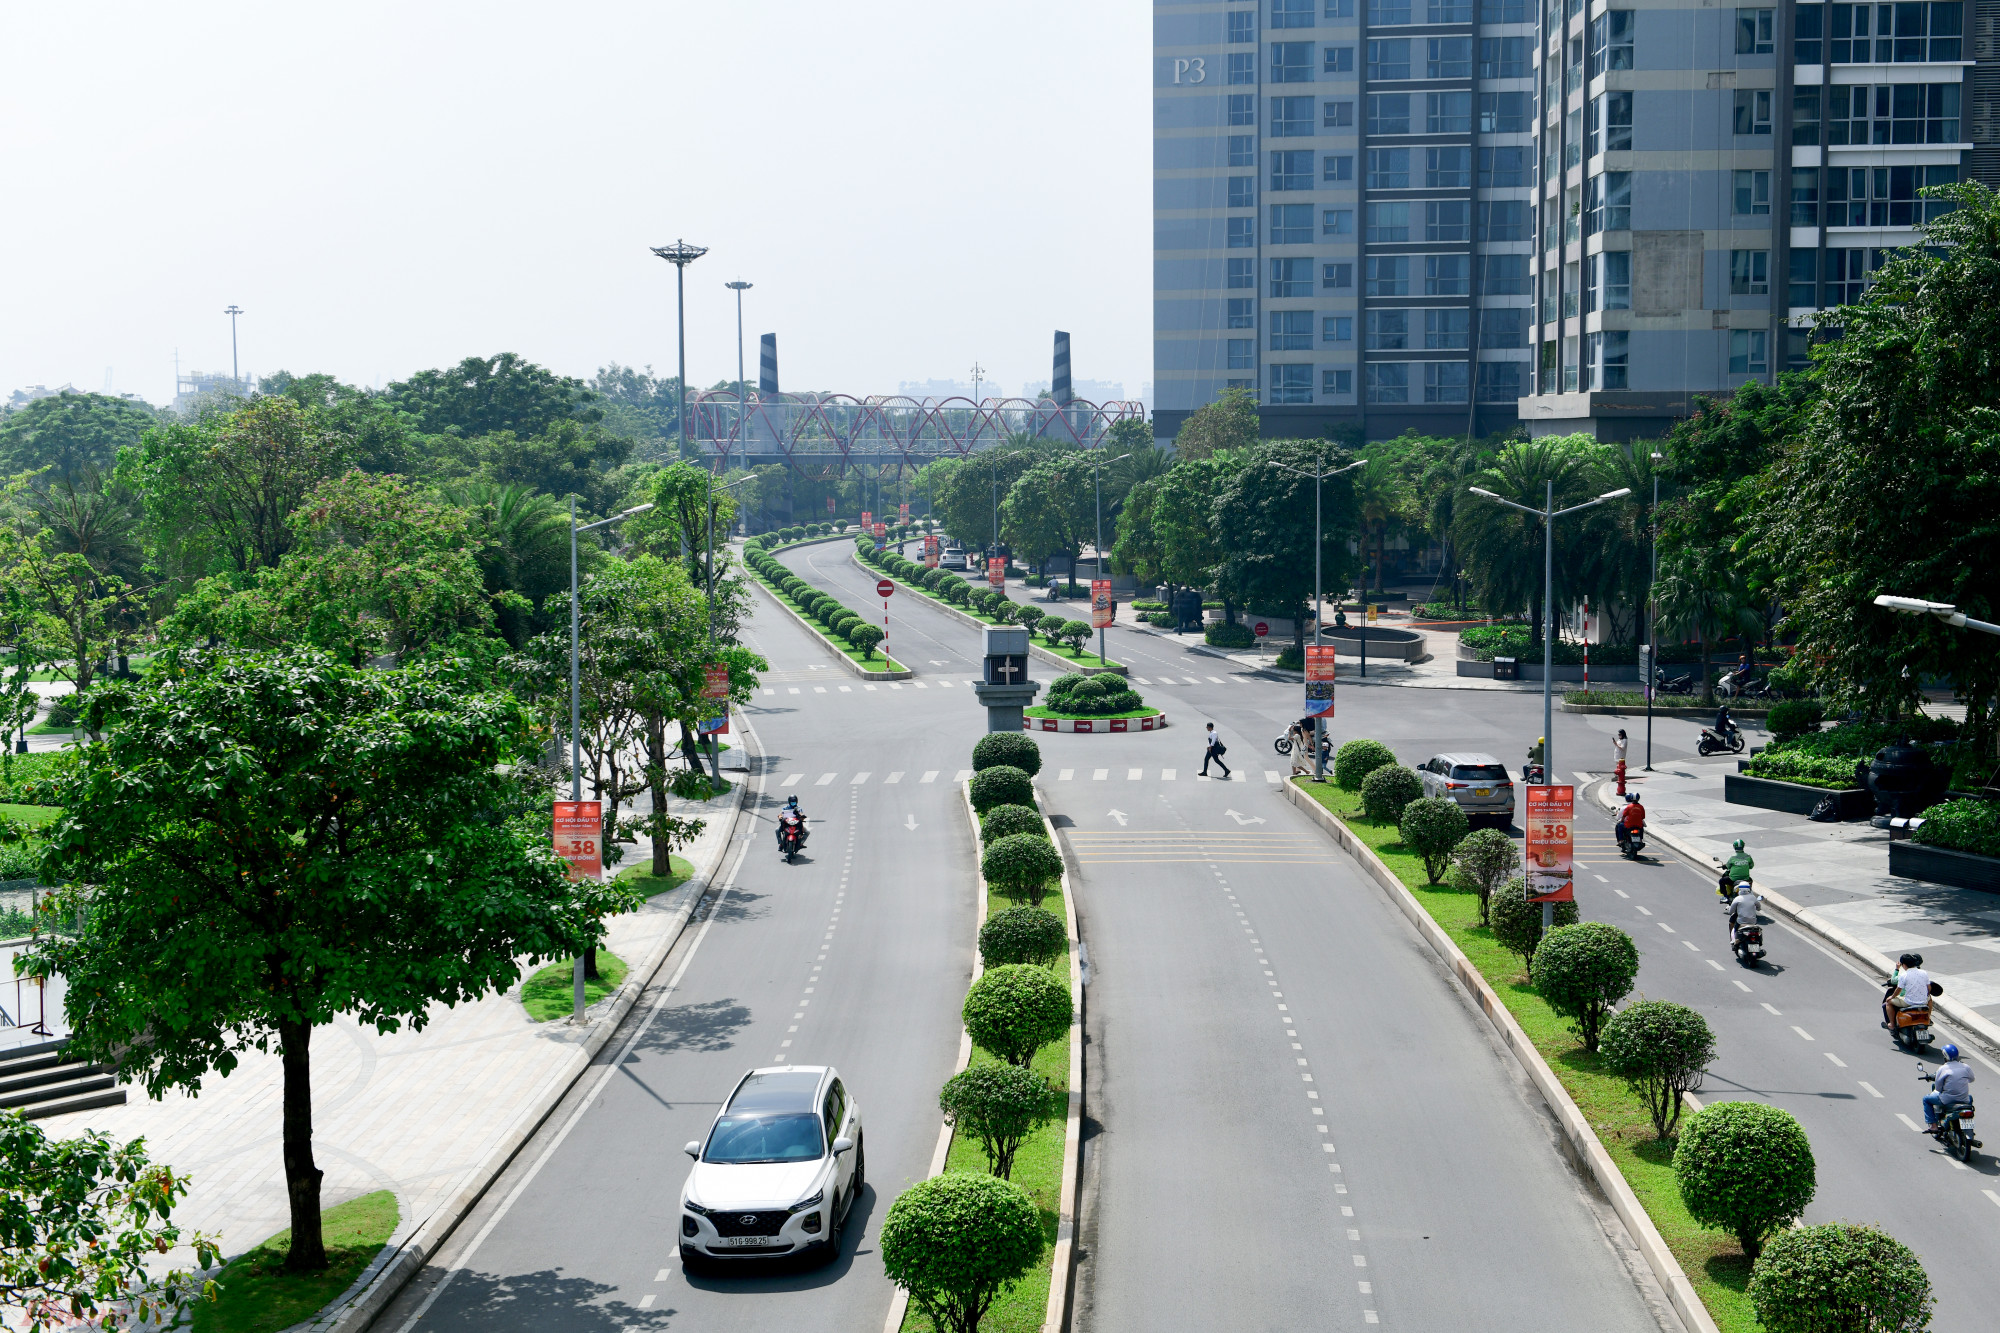 Đường Trần Trọng Kim nằm trong khu đô thị Vinhomes có 6 làn xe, 2 bên được trồng nhiều cây xanh khá đẹp.